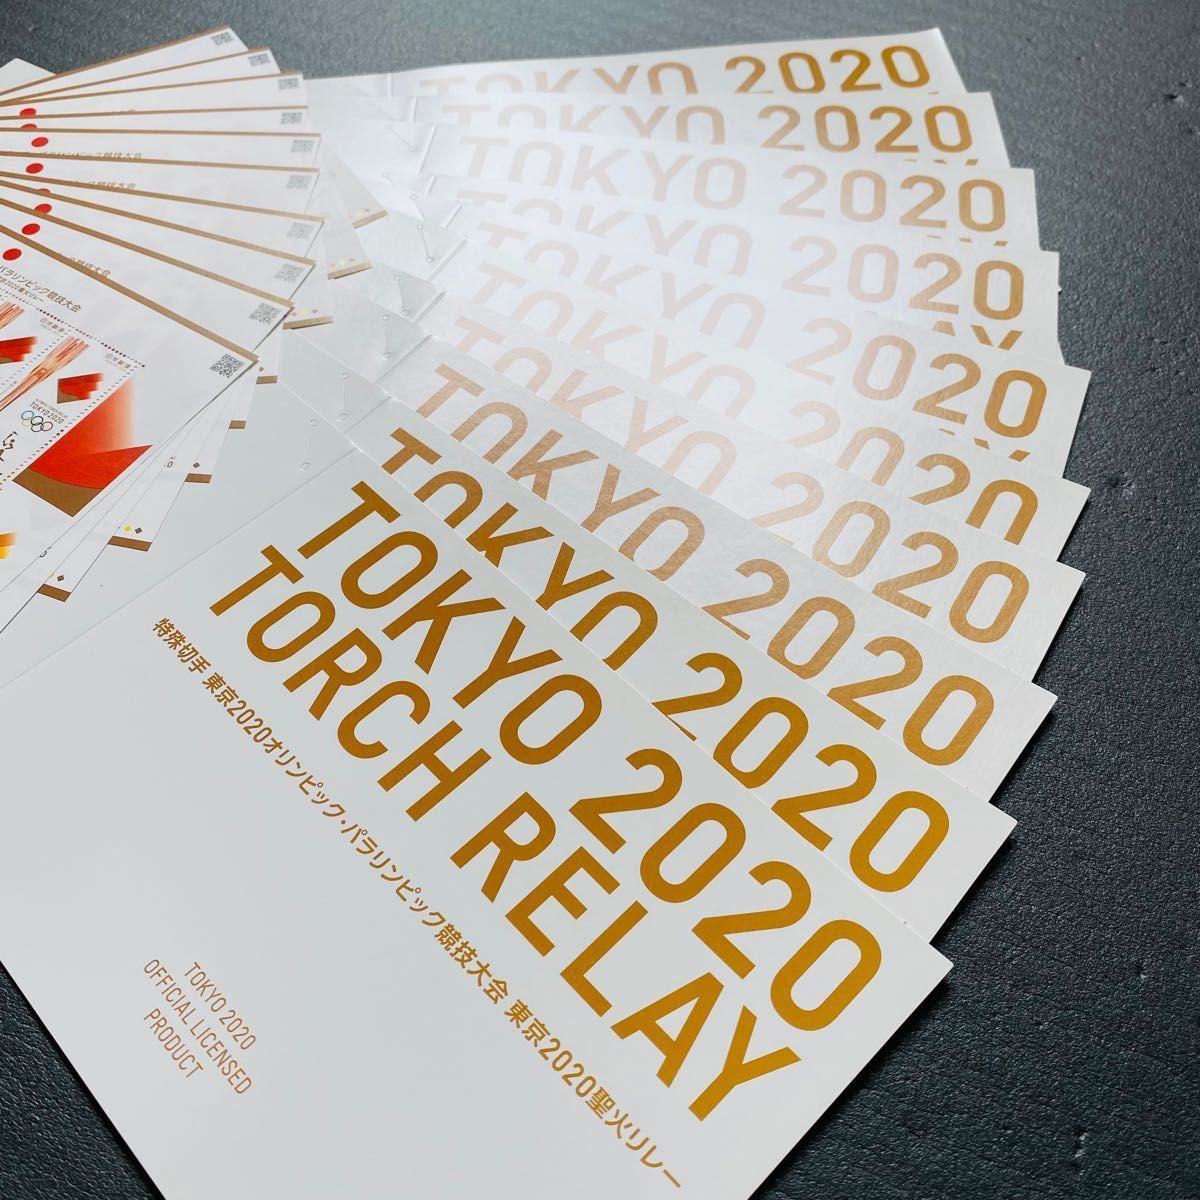 専用台紙付き 東京2020オリンピック・パラリンピック競技大会 聖火リレー 特殊切手シート　5シートセット+台紙1枚